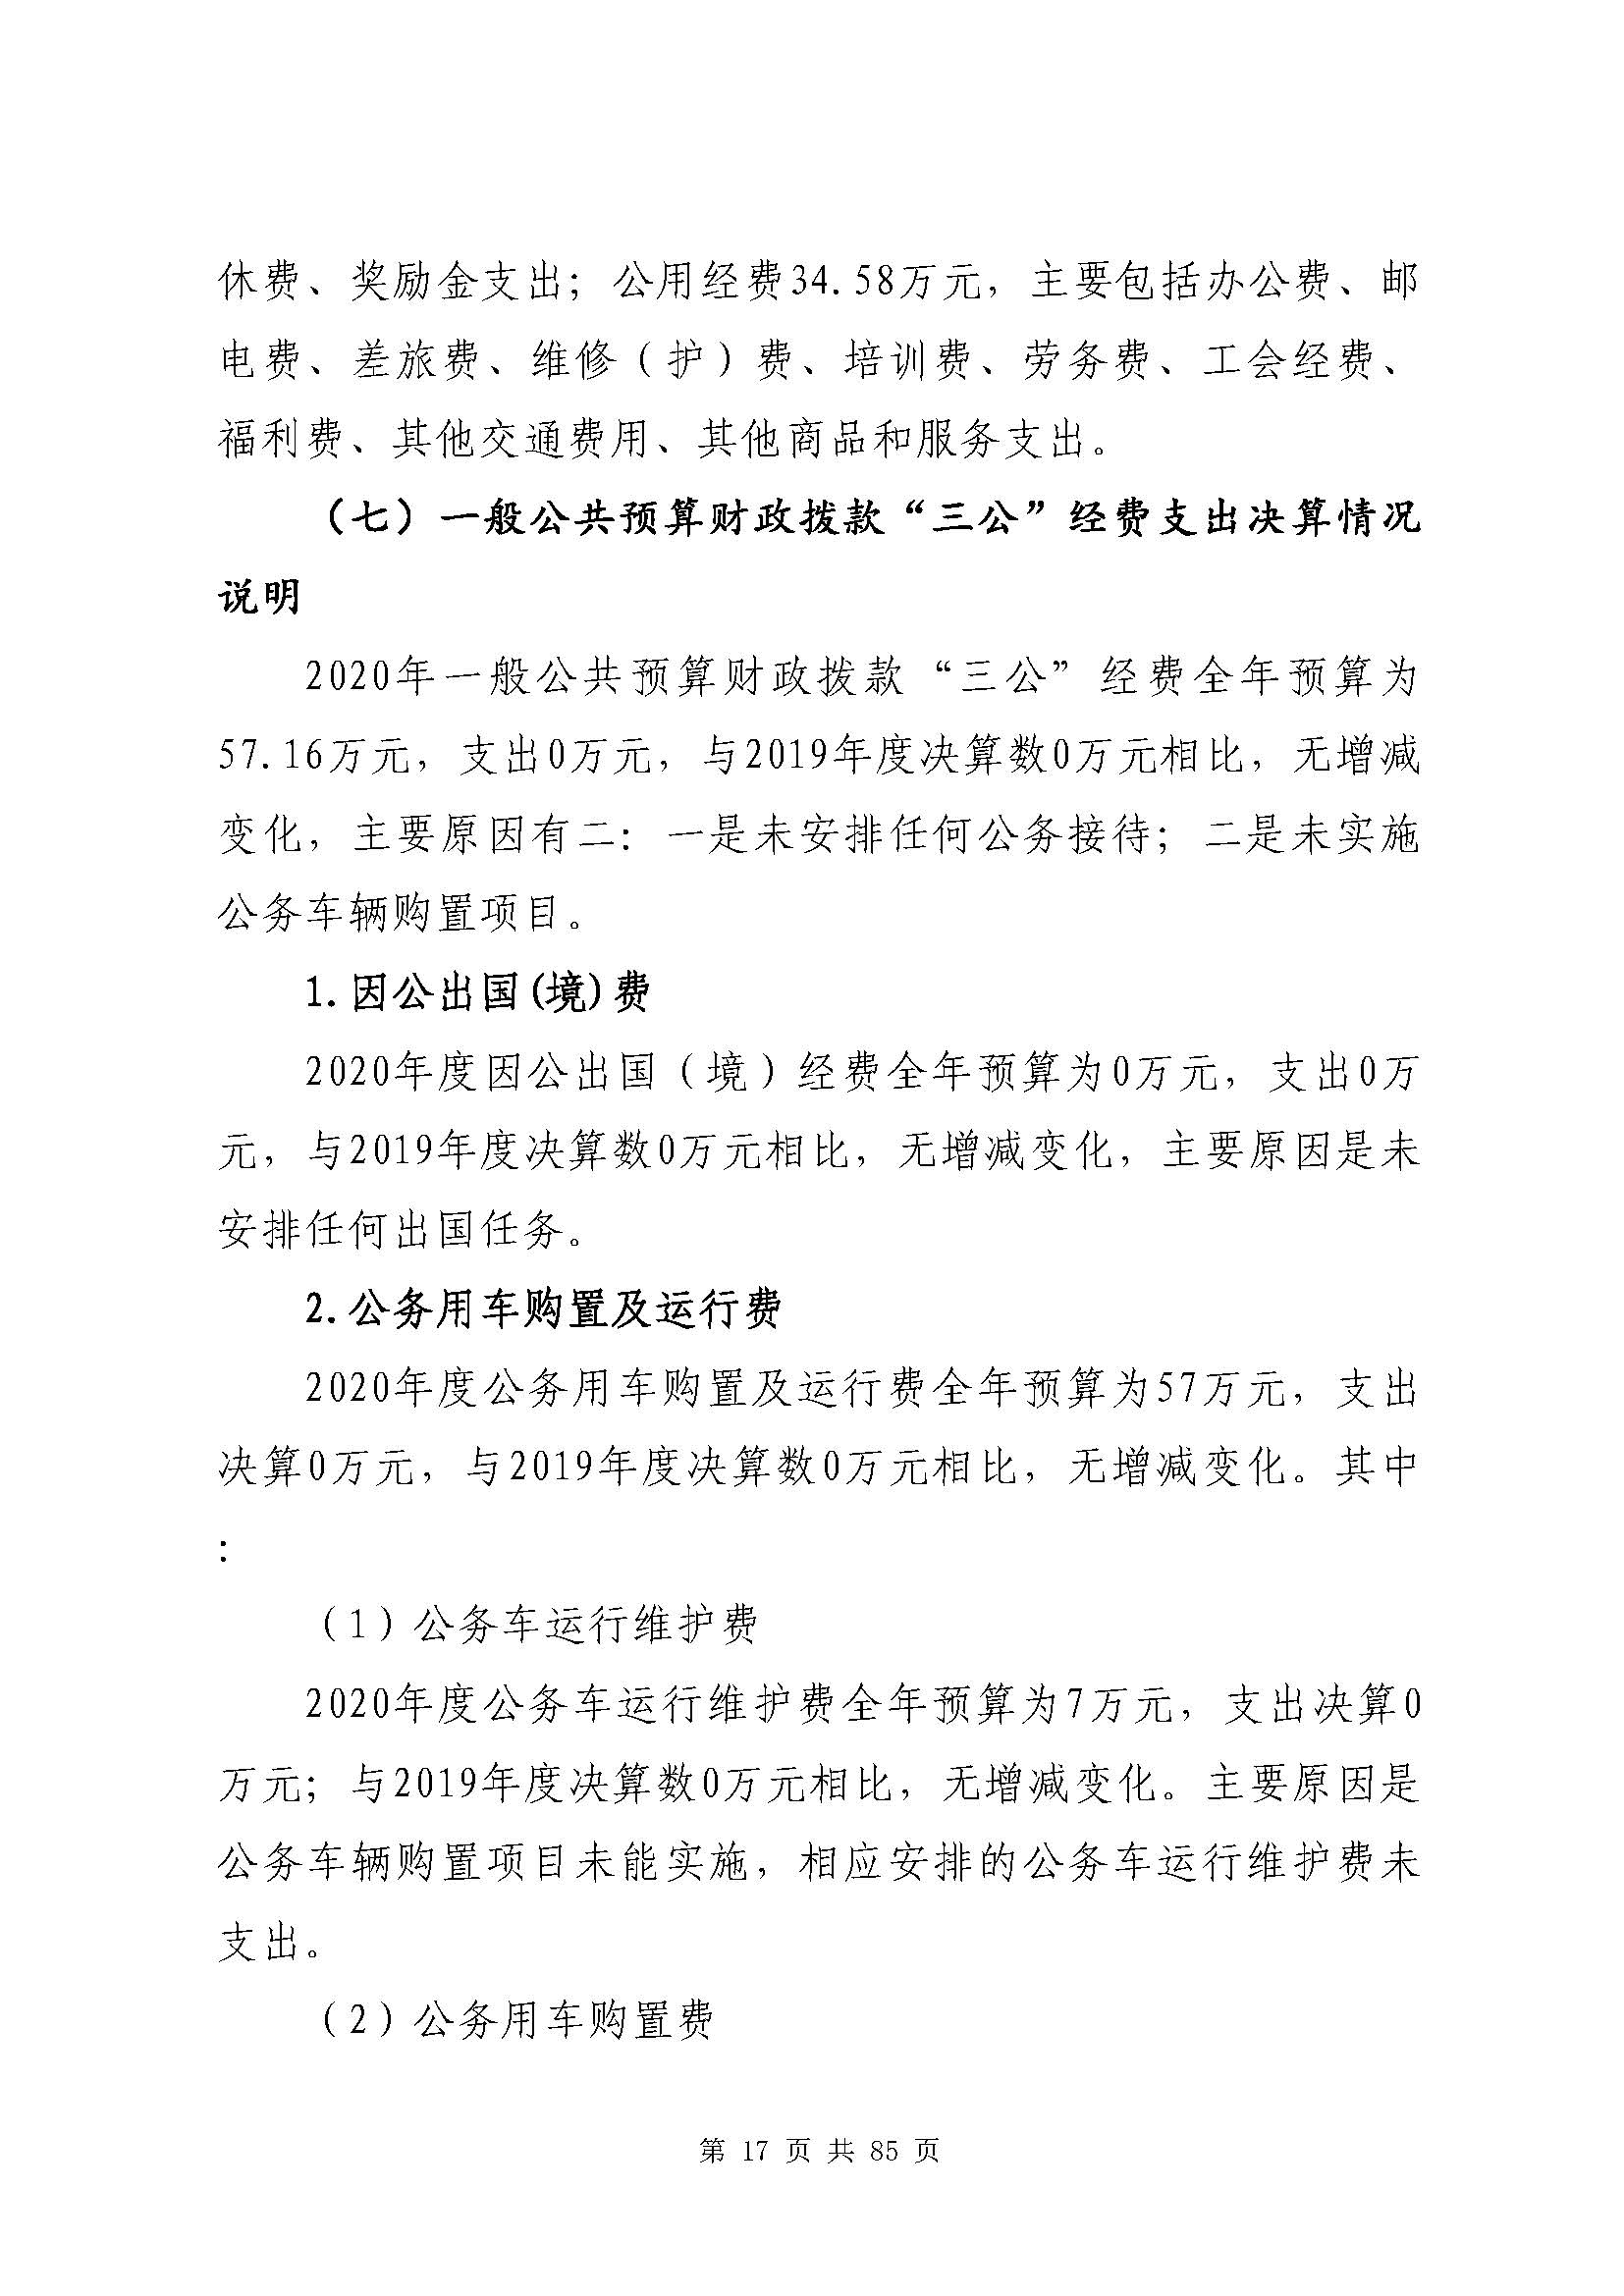 深圳市招生考试办公室2020年度部门决算_页面_18.jpg